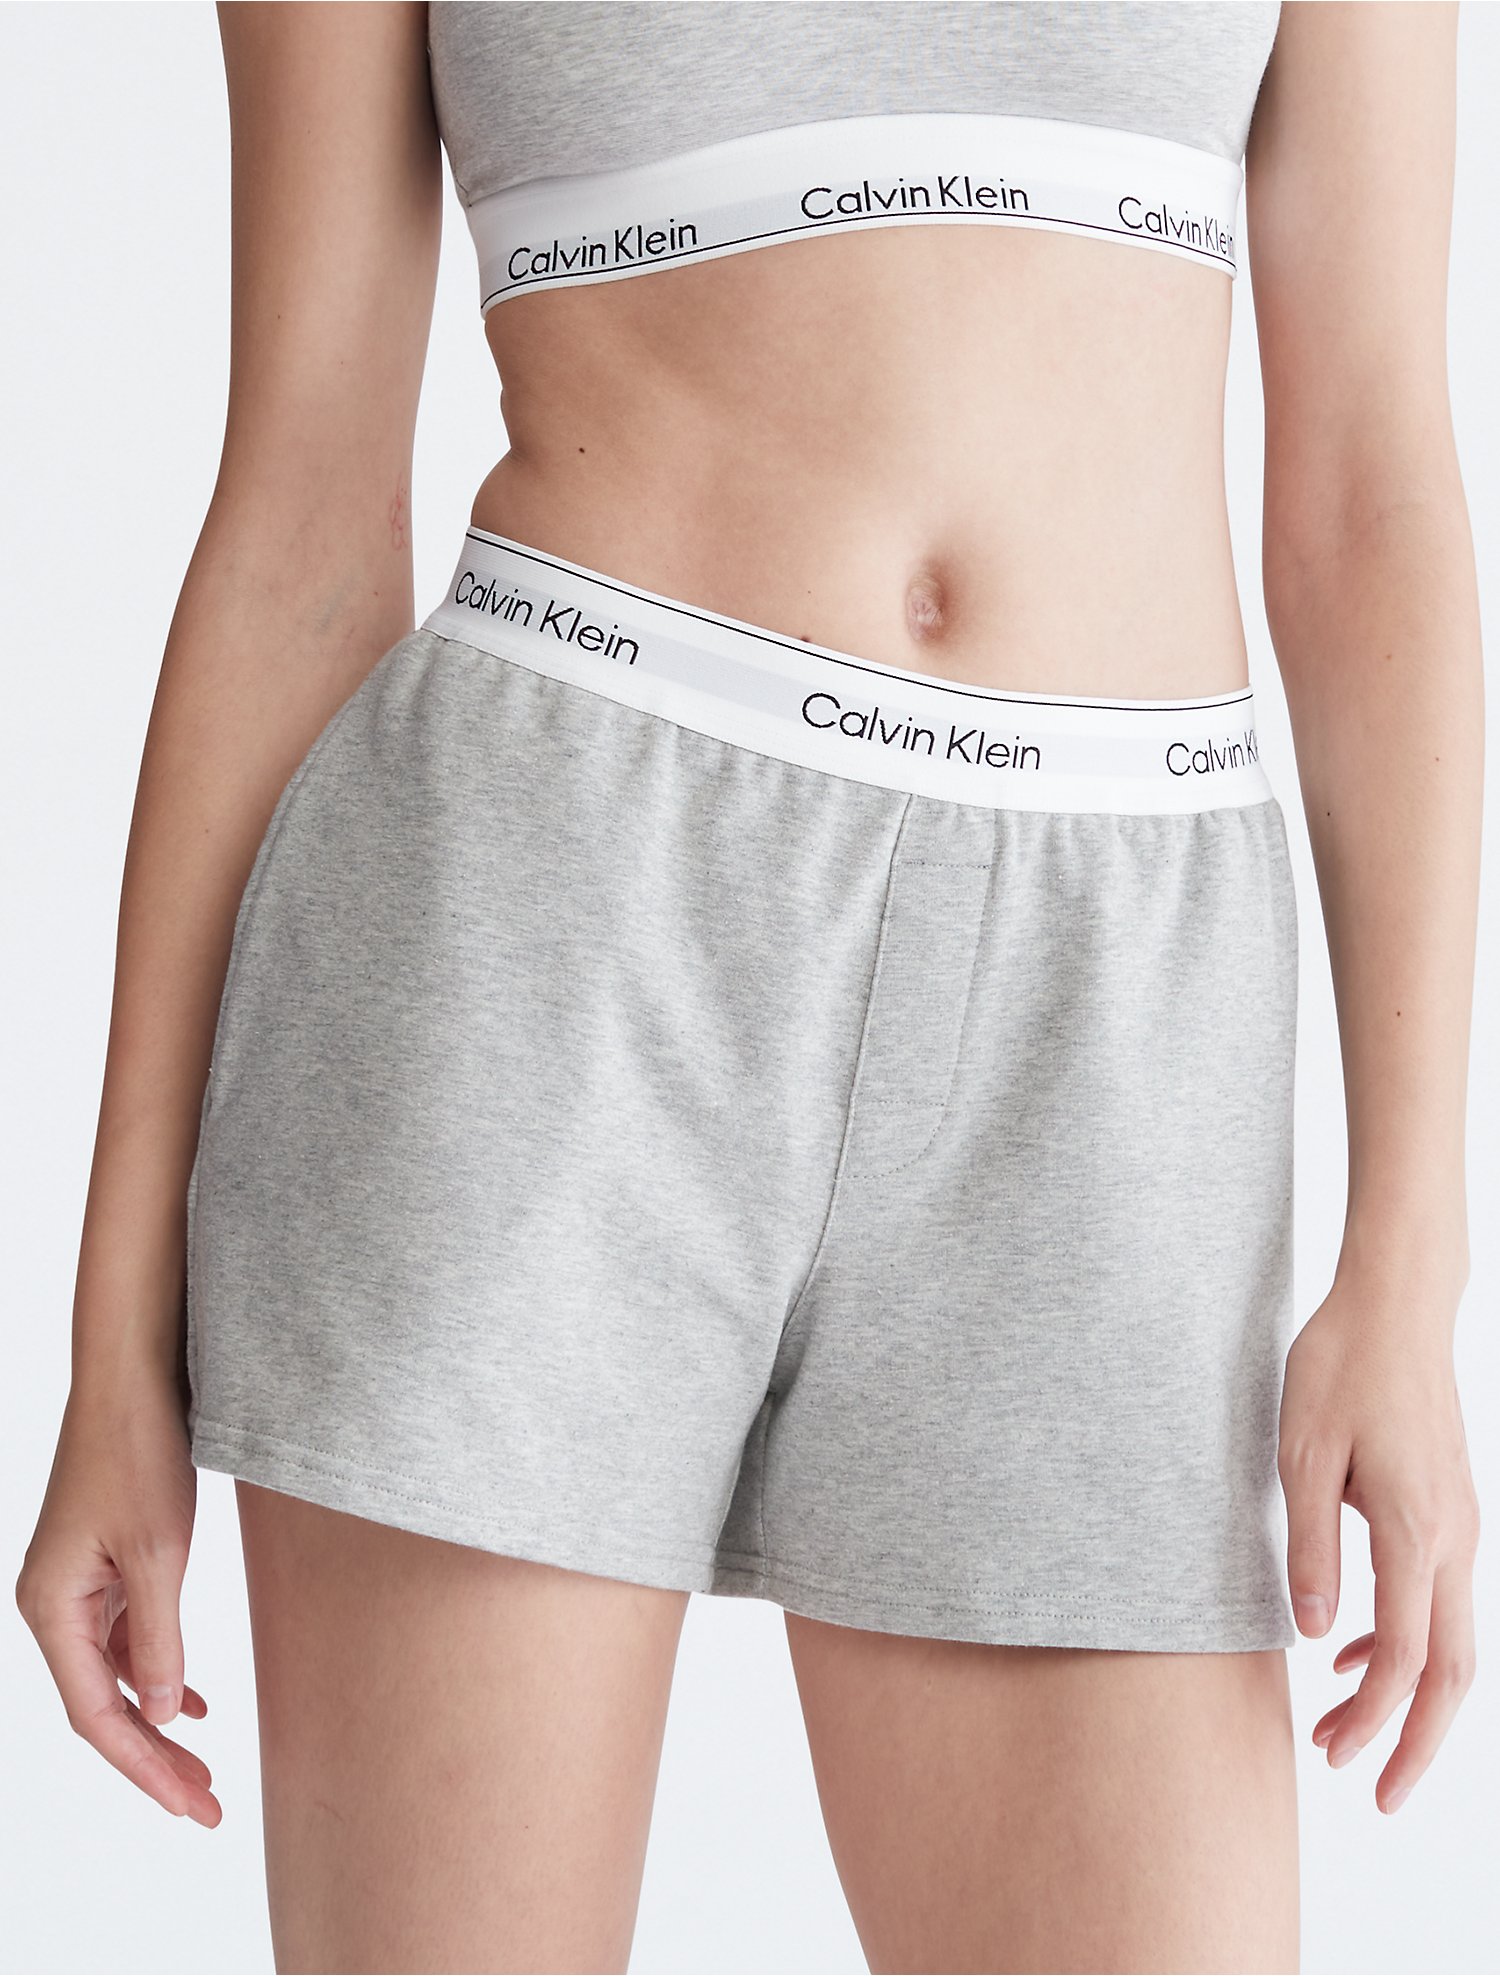 Introducir 52+ imagen calvin klein grey sleep shorts